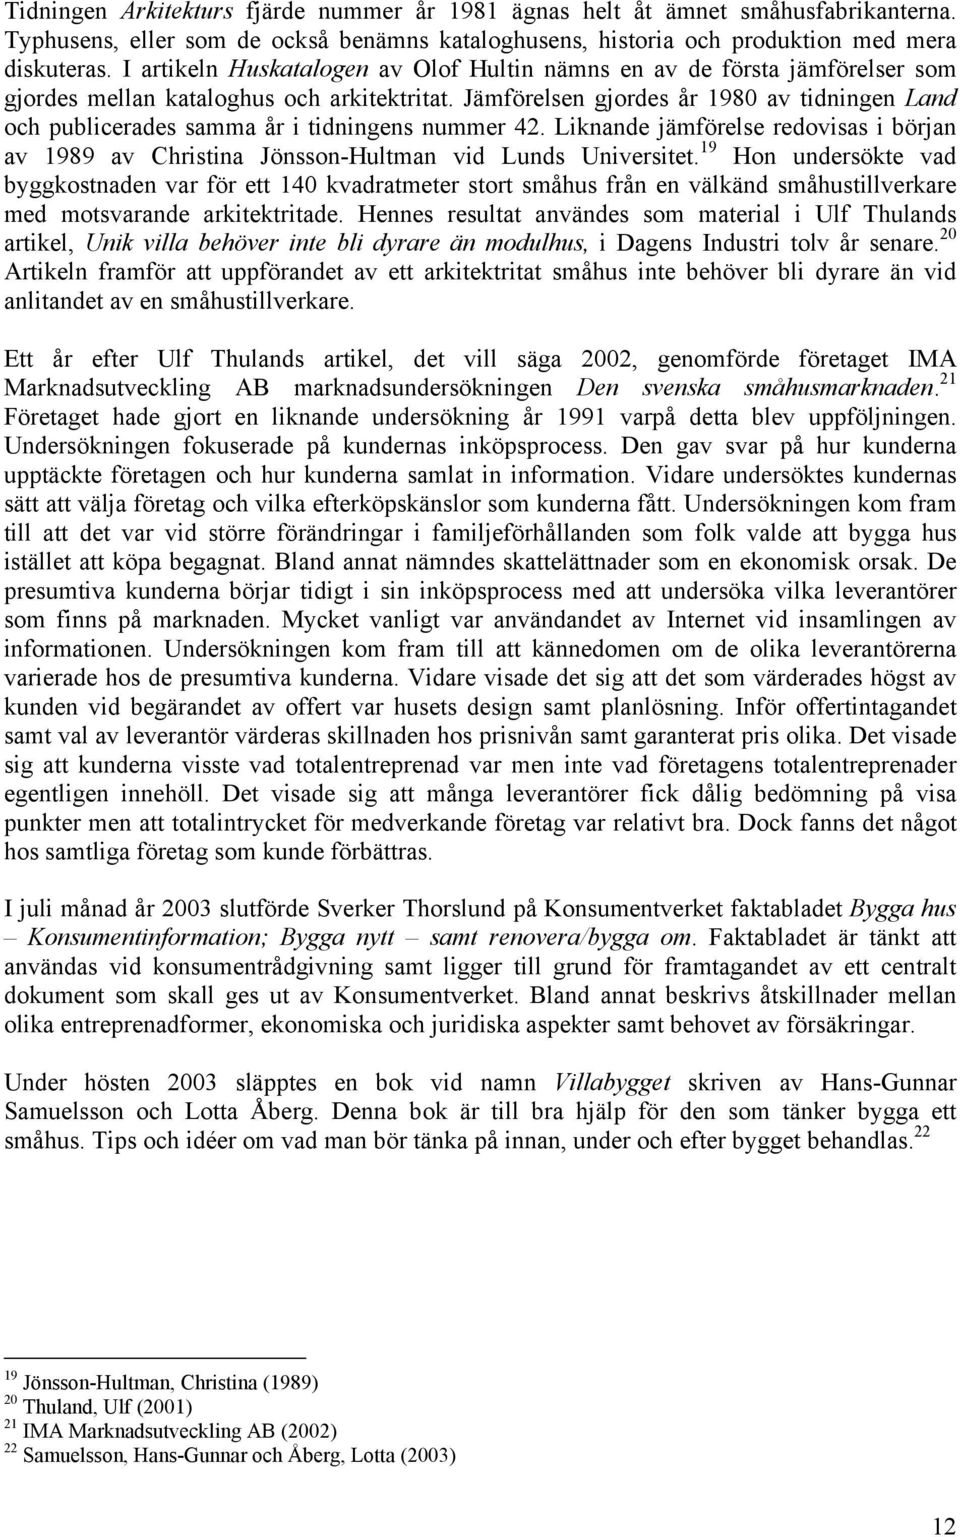 Jämförelsen gjordes år 1980 av tidningen Land och publicerades samma år i tidningens nummer 42. Liknande jämförelse redovisas i början av 1989 av Christina Jönsson-Hultman vid Lunds Universitet.